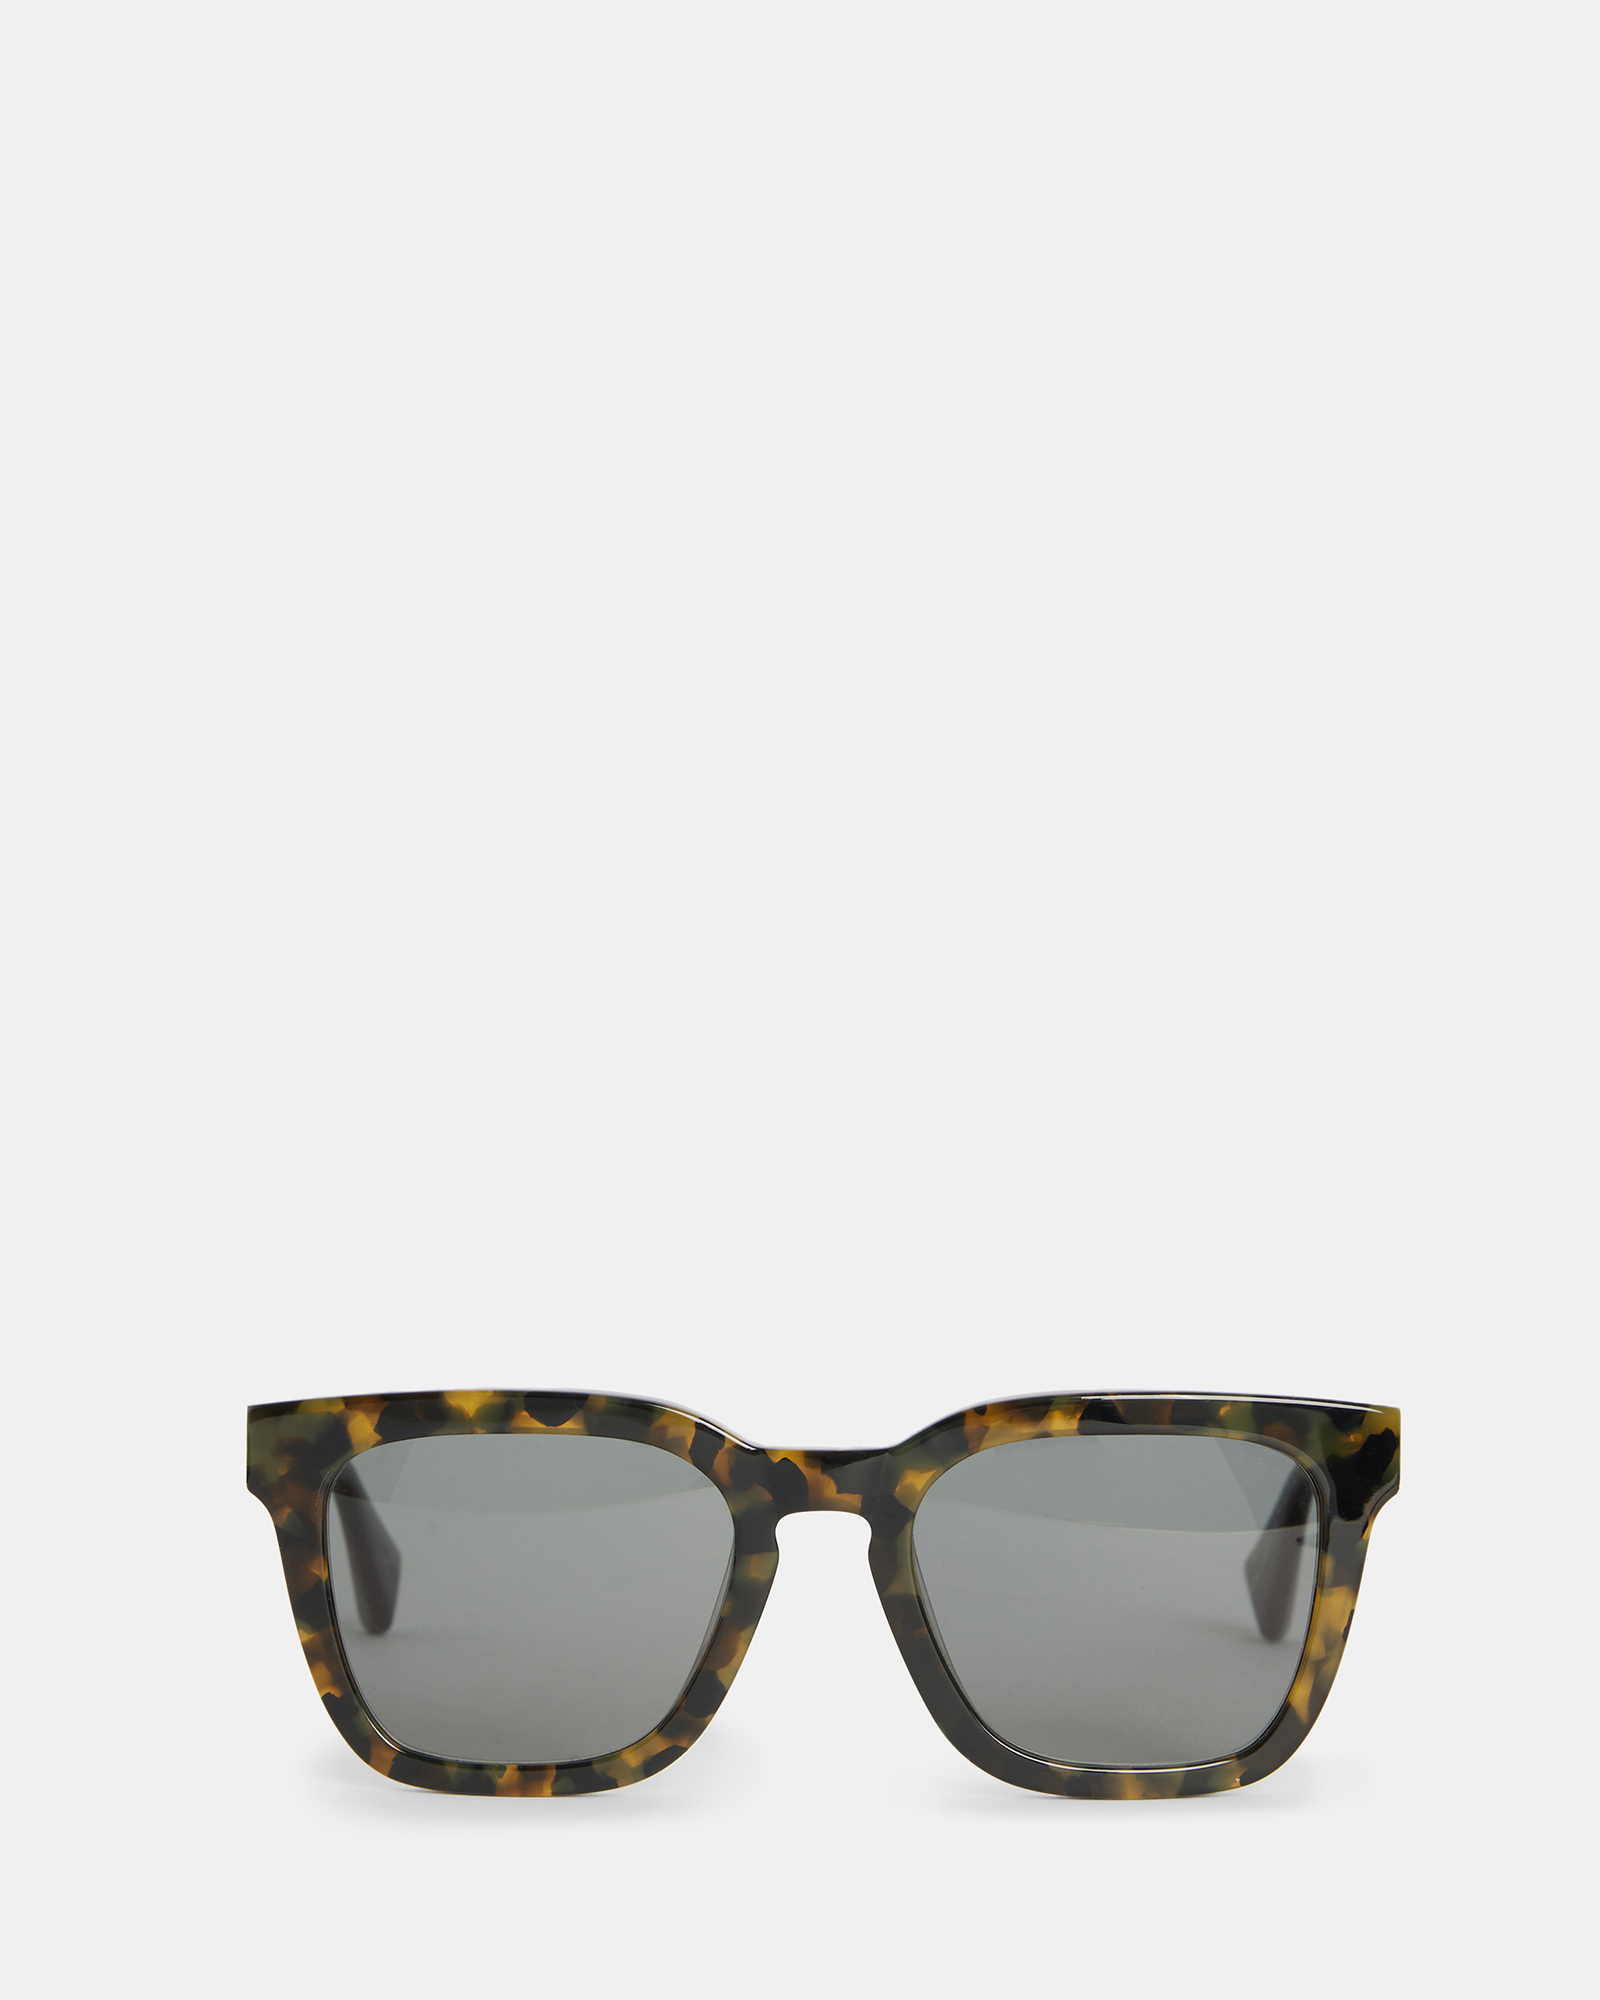 AllSaints Phoenix Square Sunglasses